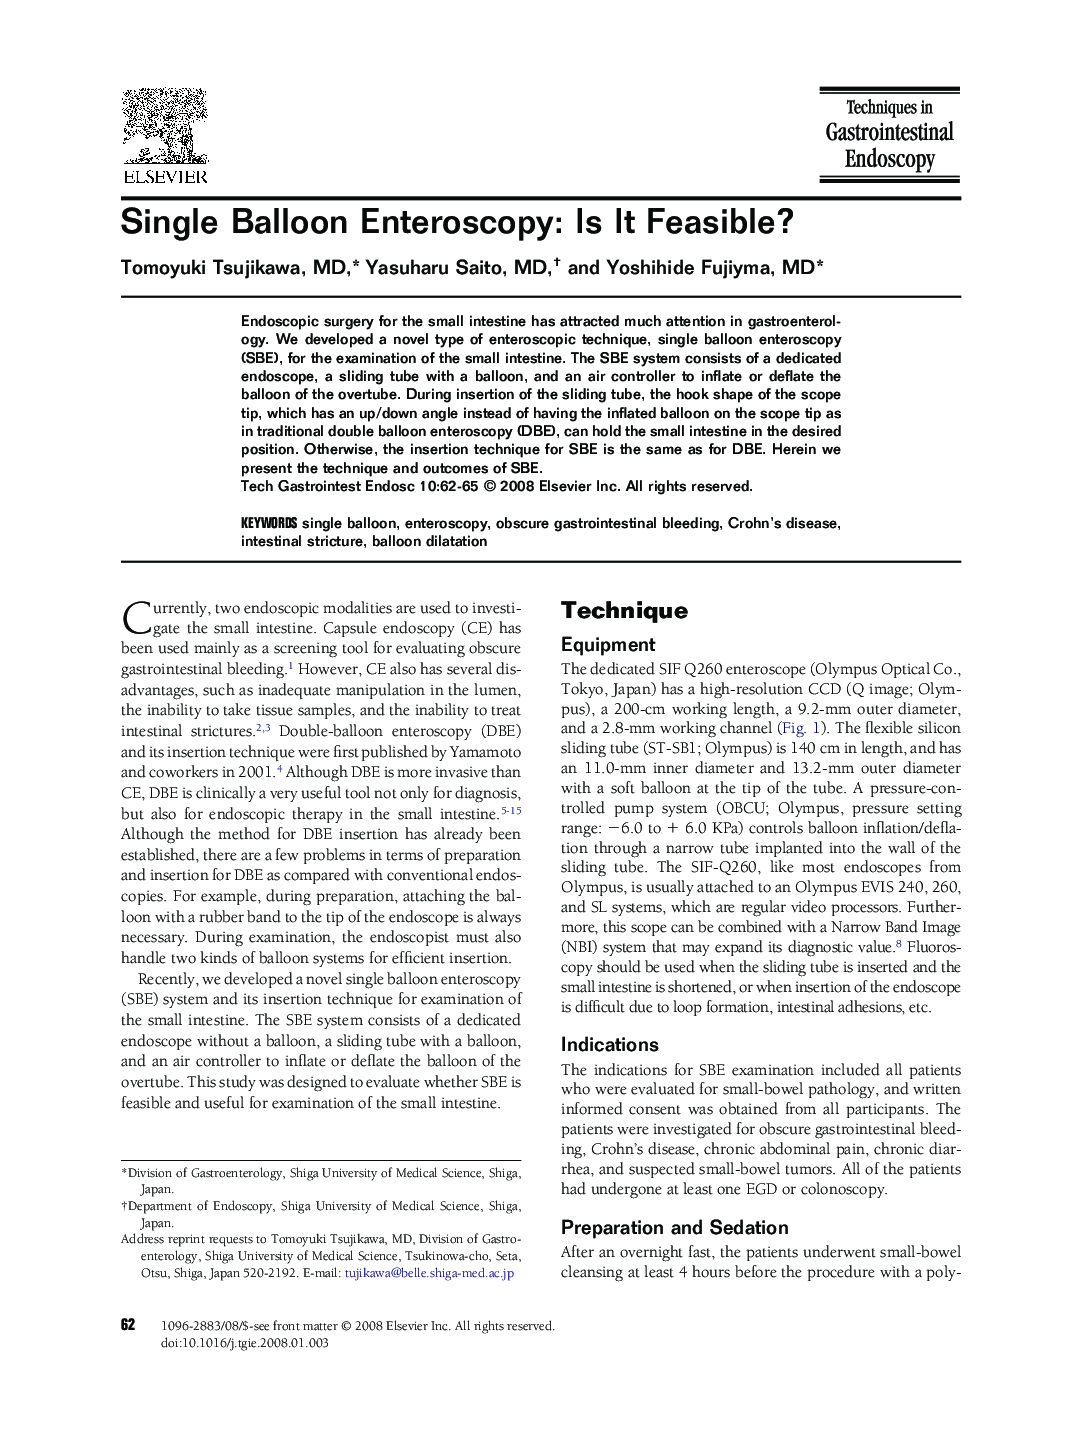 Single Balloon Enteroscopy: Is It Feasible?